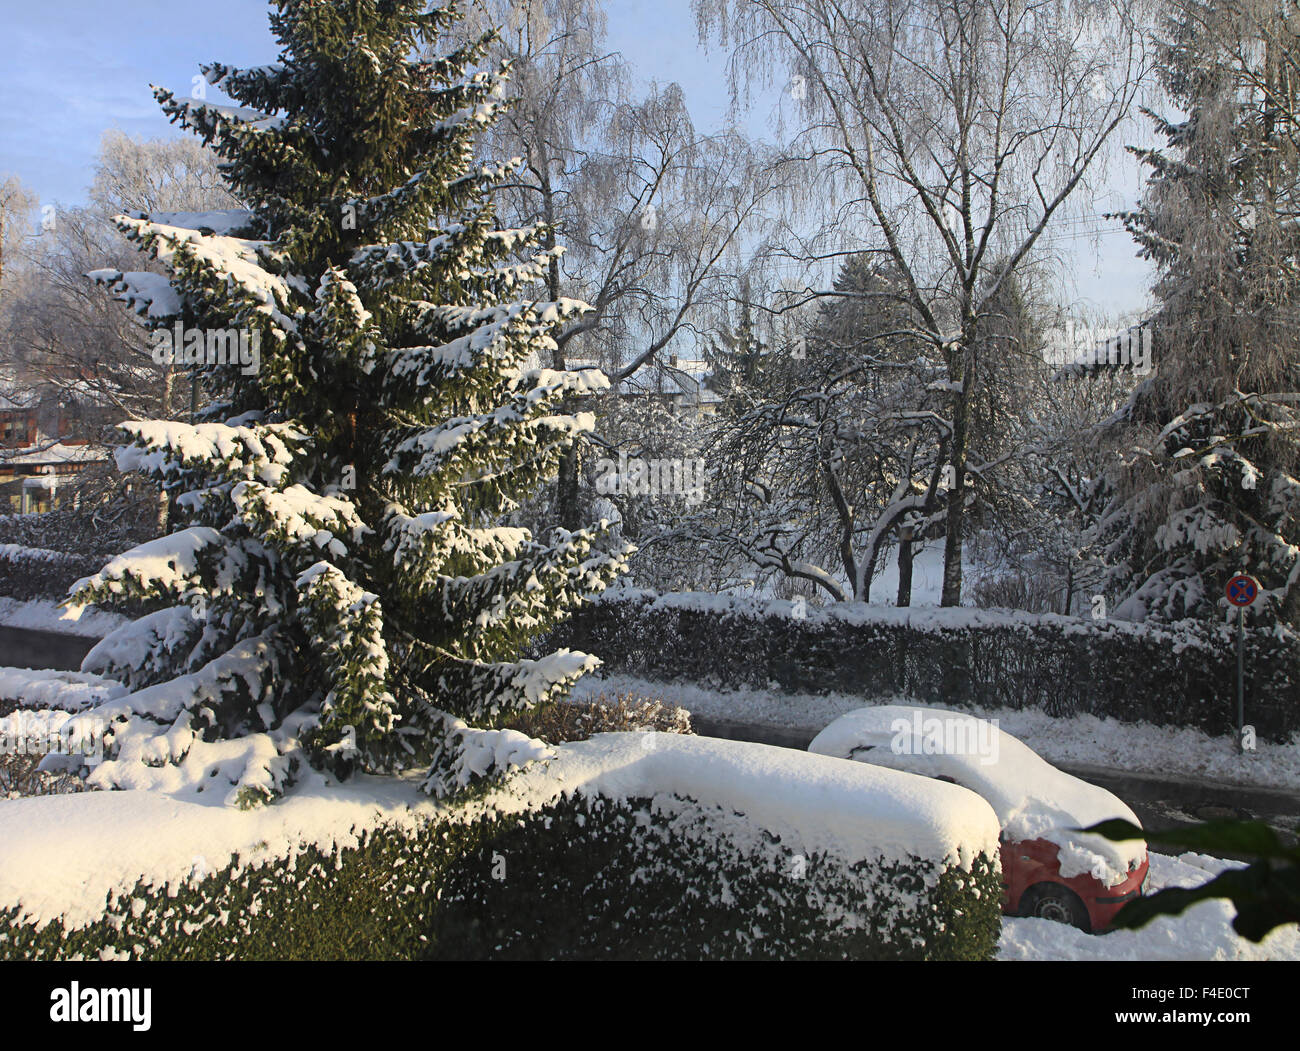 Garching, Allemagne - après soleil neige avec voiture et les arbres couverts de blanc Banque D'Images